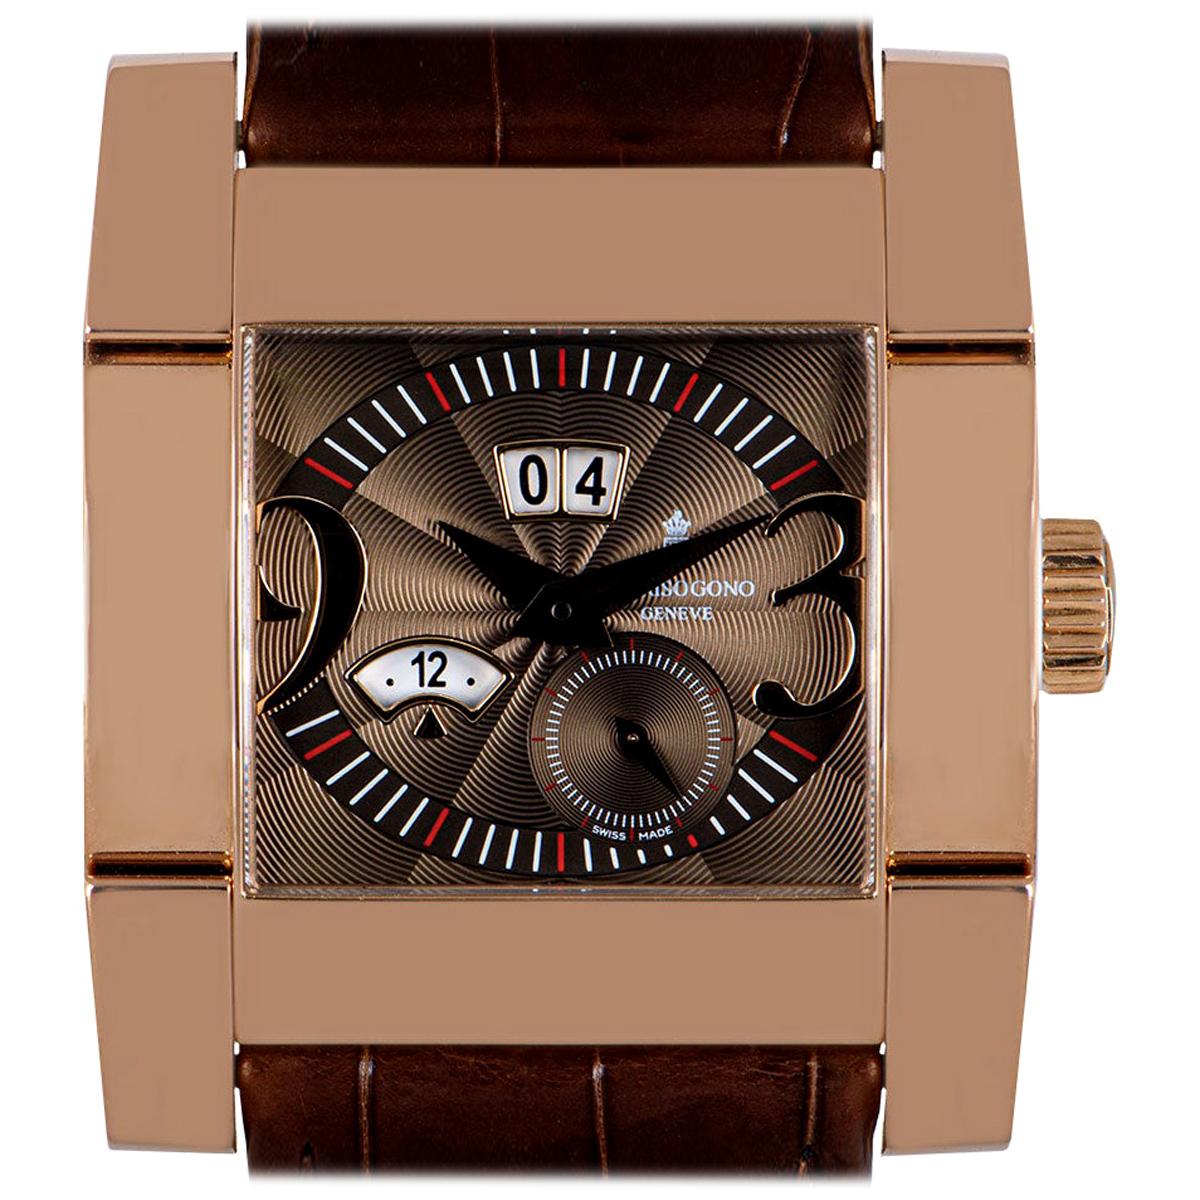 de GRISOGONO Watches - 9 For Sale at 1stDibs  de grisogono watches price,  degrisogono watches, de grisogono watches for sale